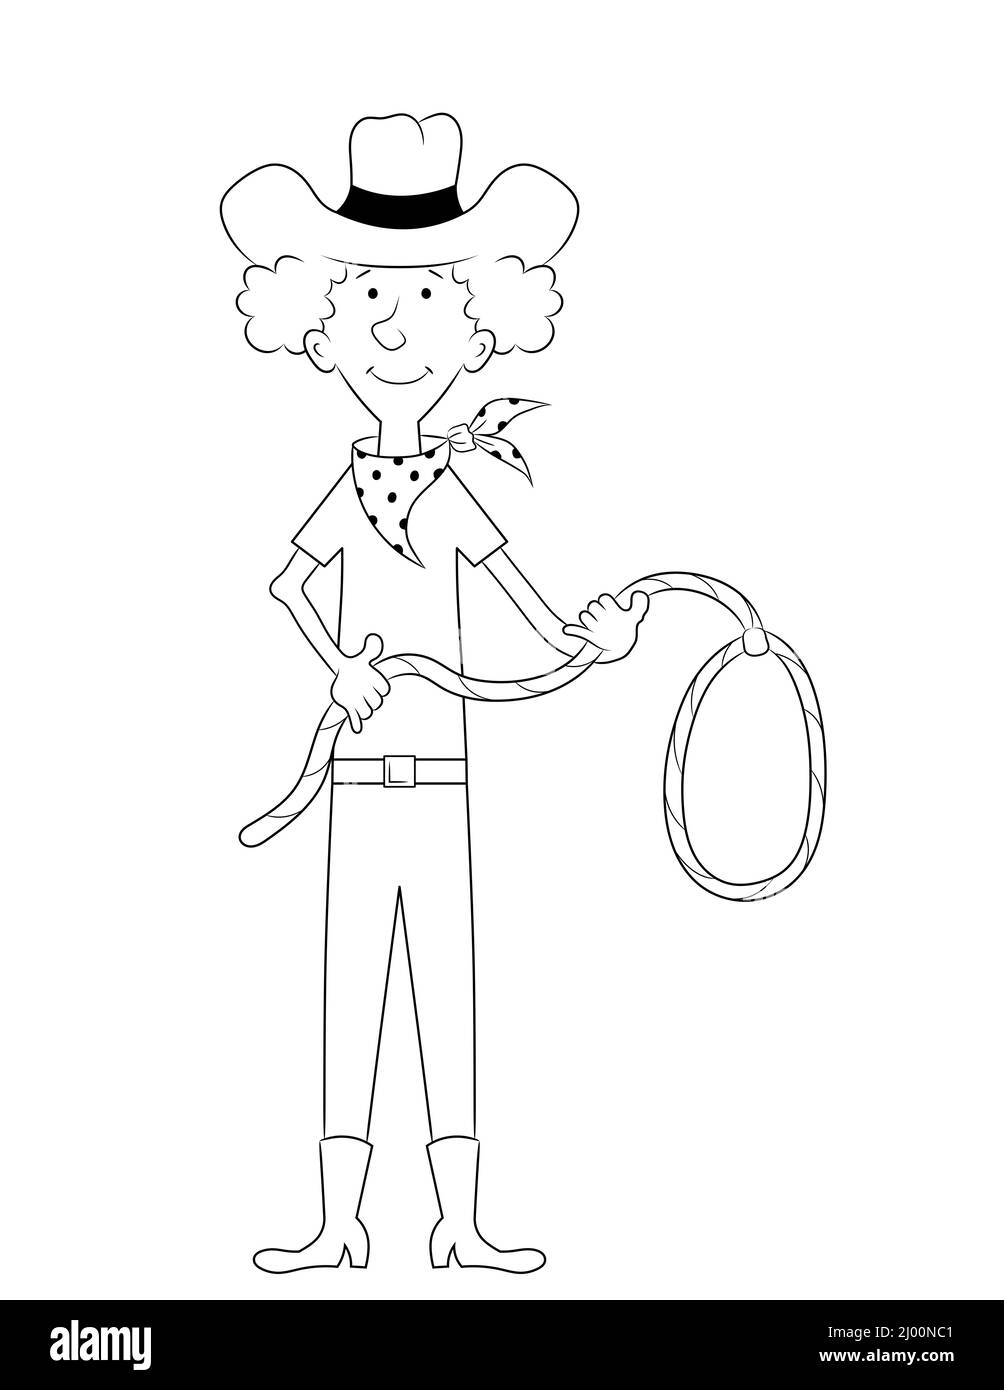 cowboy personaggio cartoon, divertente disegno di un uomo con cappello, bandanna e tenendo un lazo. contorno bianco e nero illustrazione Foto Stock